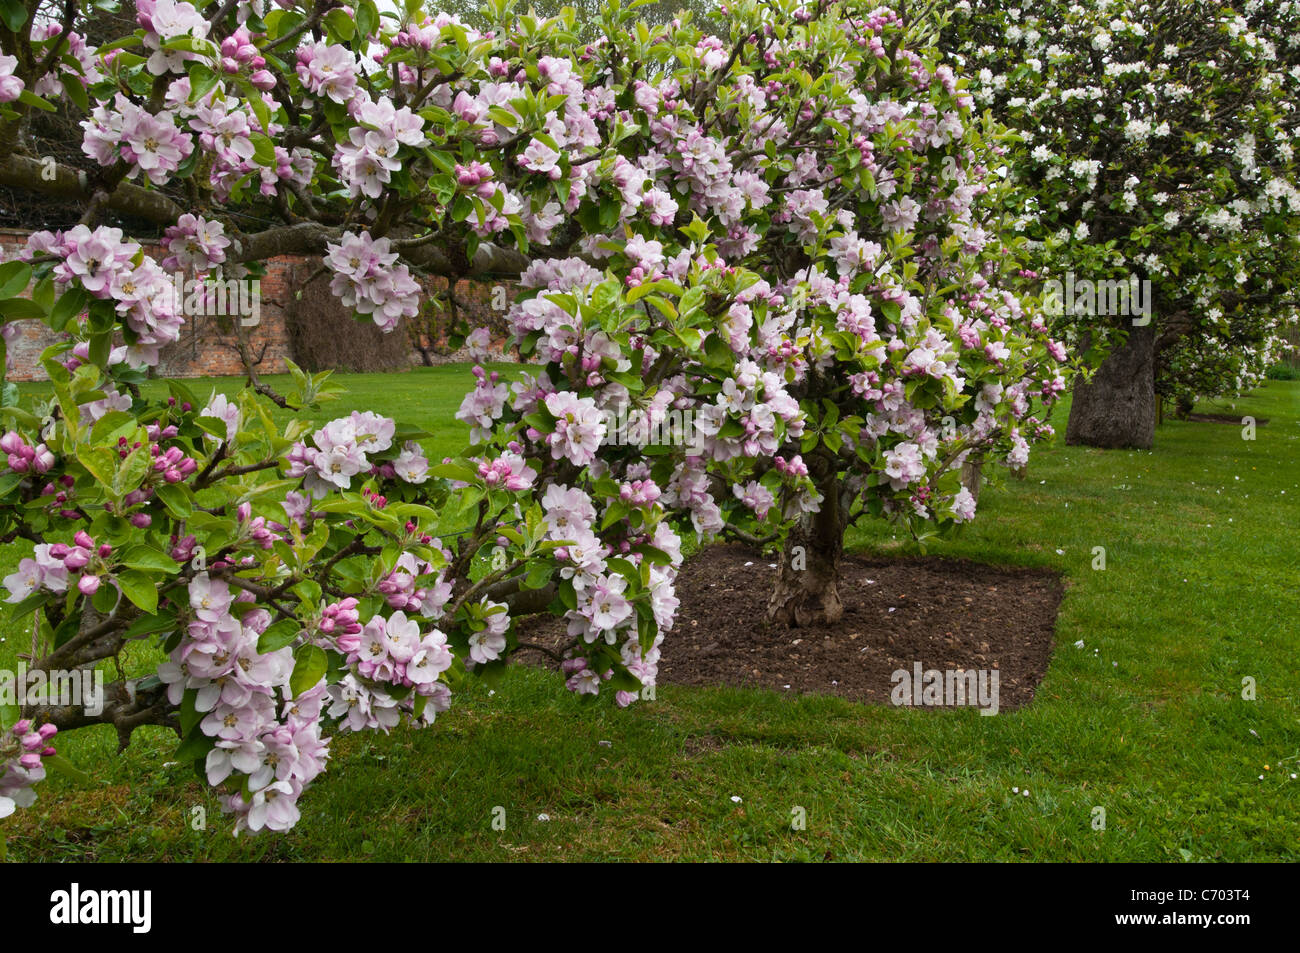 Alberi di mele in fiore. Lord Suffield varietà di mela inglese tradizionale piena di fiori rosa e bianco a Rousham House, Oxfordshire, Inghilterra. Foto Stock